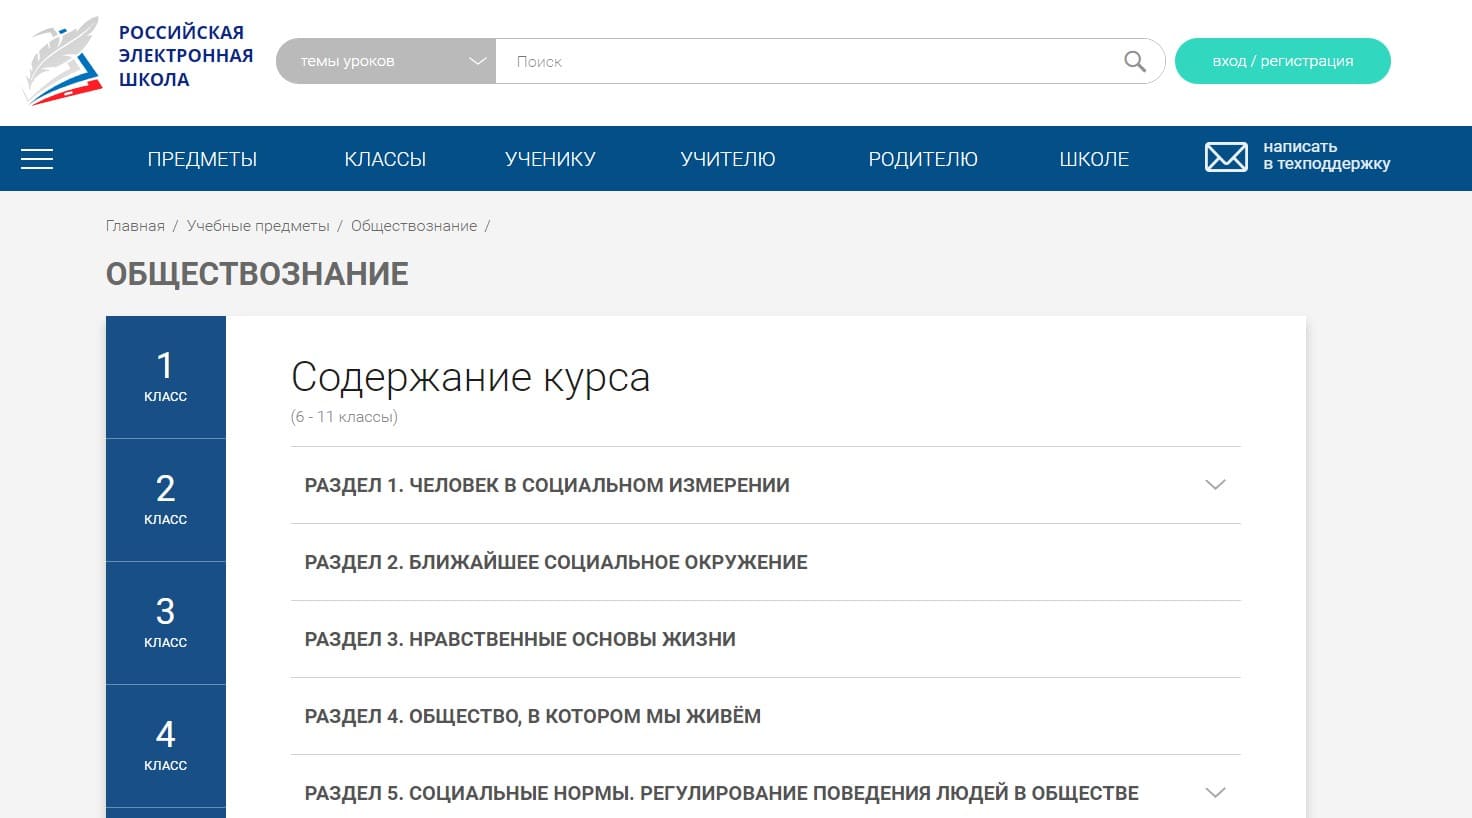 Подготовка к ЕГЭ по обществознанию - Российская электронная школа